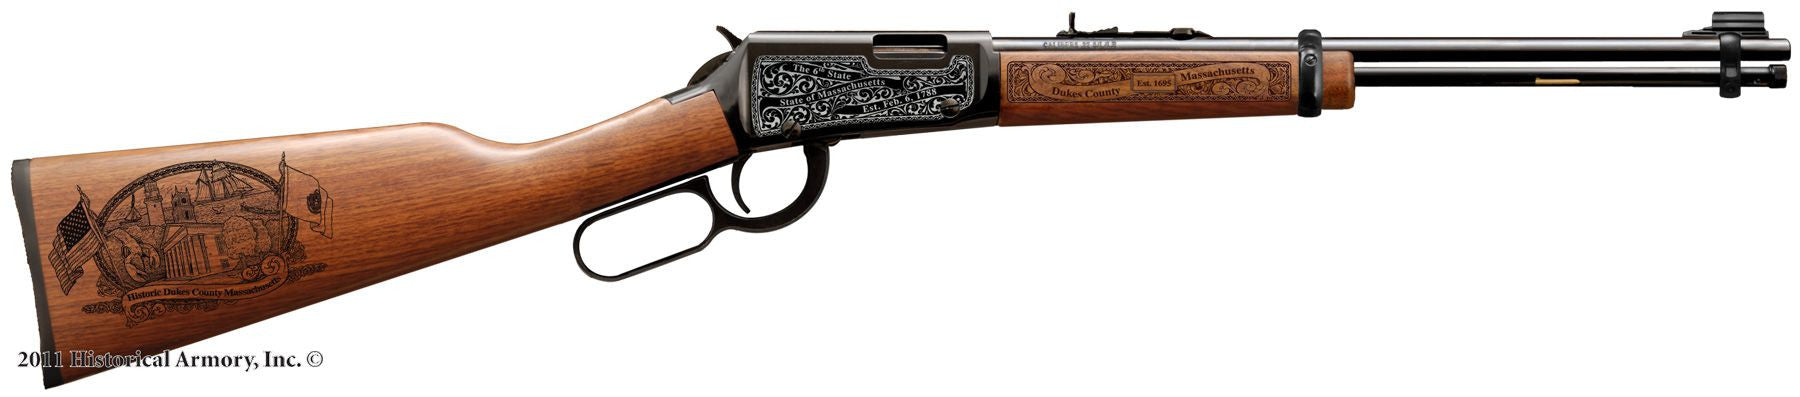 Dukes county massachusetts engraved rifle H001